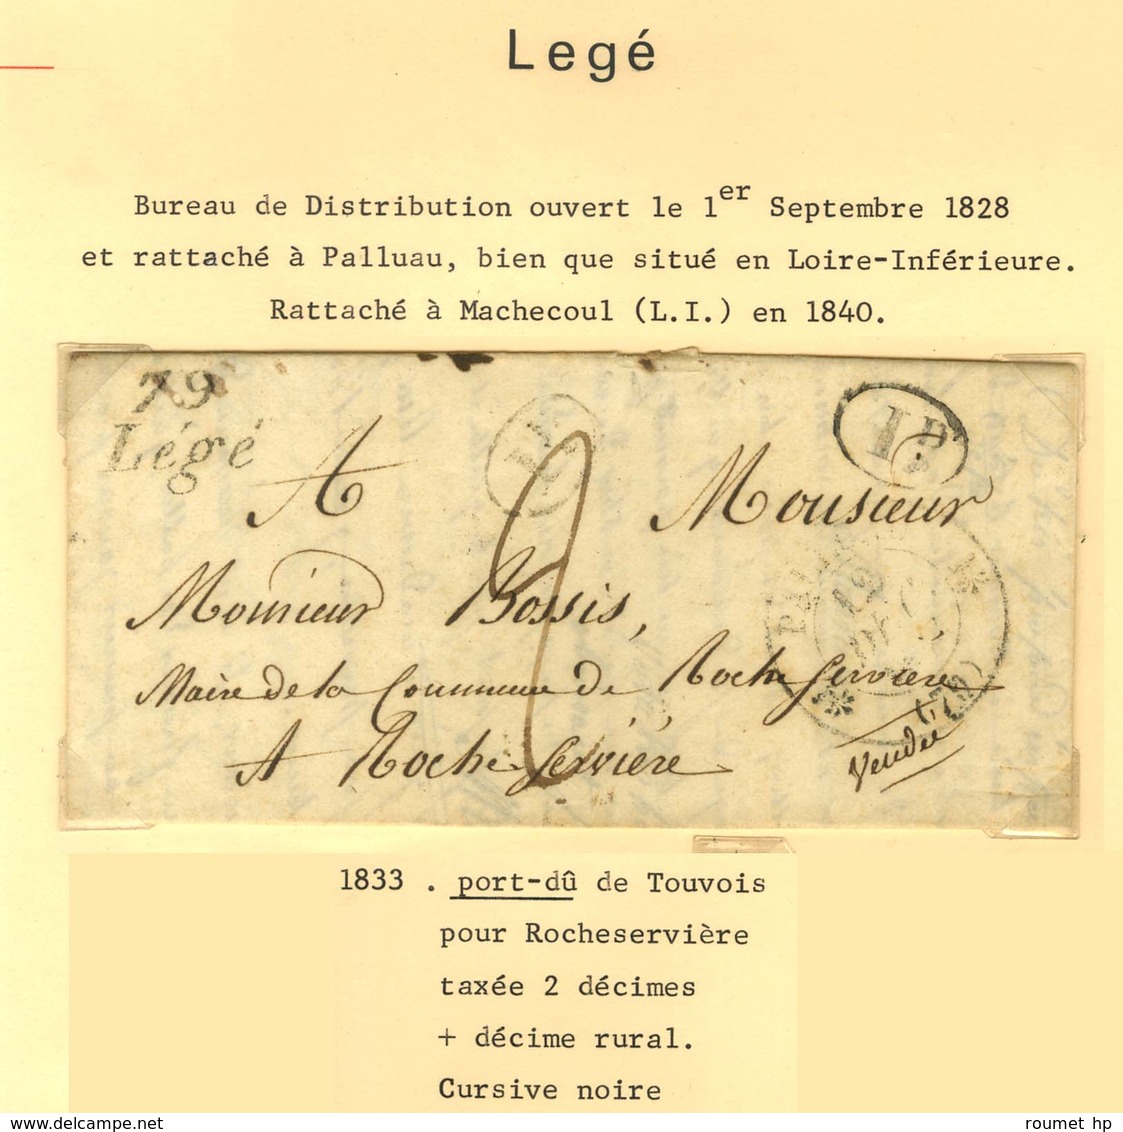 Lot de 13 marques postales et oblitérations de d'Aizenay, la Barre de Mont, Bouin, l'Ile d'Yeu et Lège. - B / TB.